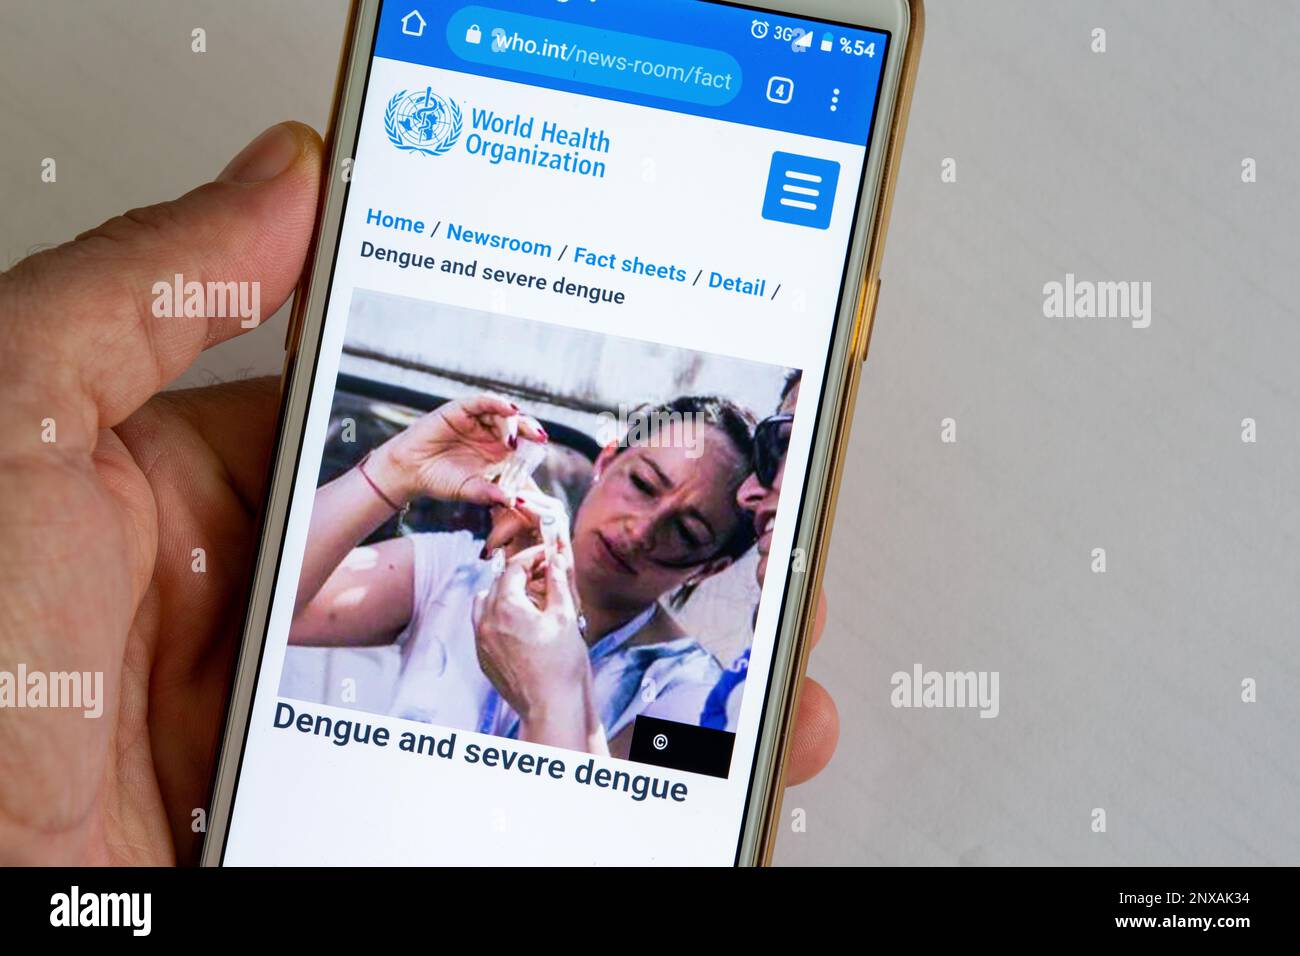 Eine Hand hält ein Mobiltelefon. Die Website der Weltgesundheitsorganisation (WHO) ist auf dem Mobiltelefon zugänglich. Bild von Dengue und schwerem Dengue. Stockfoto